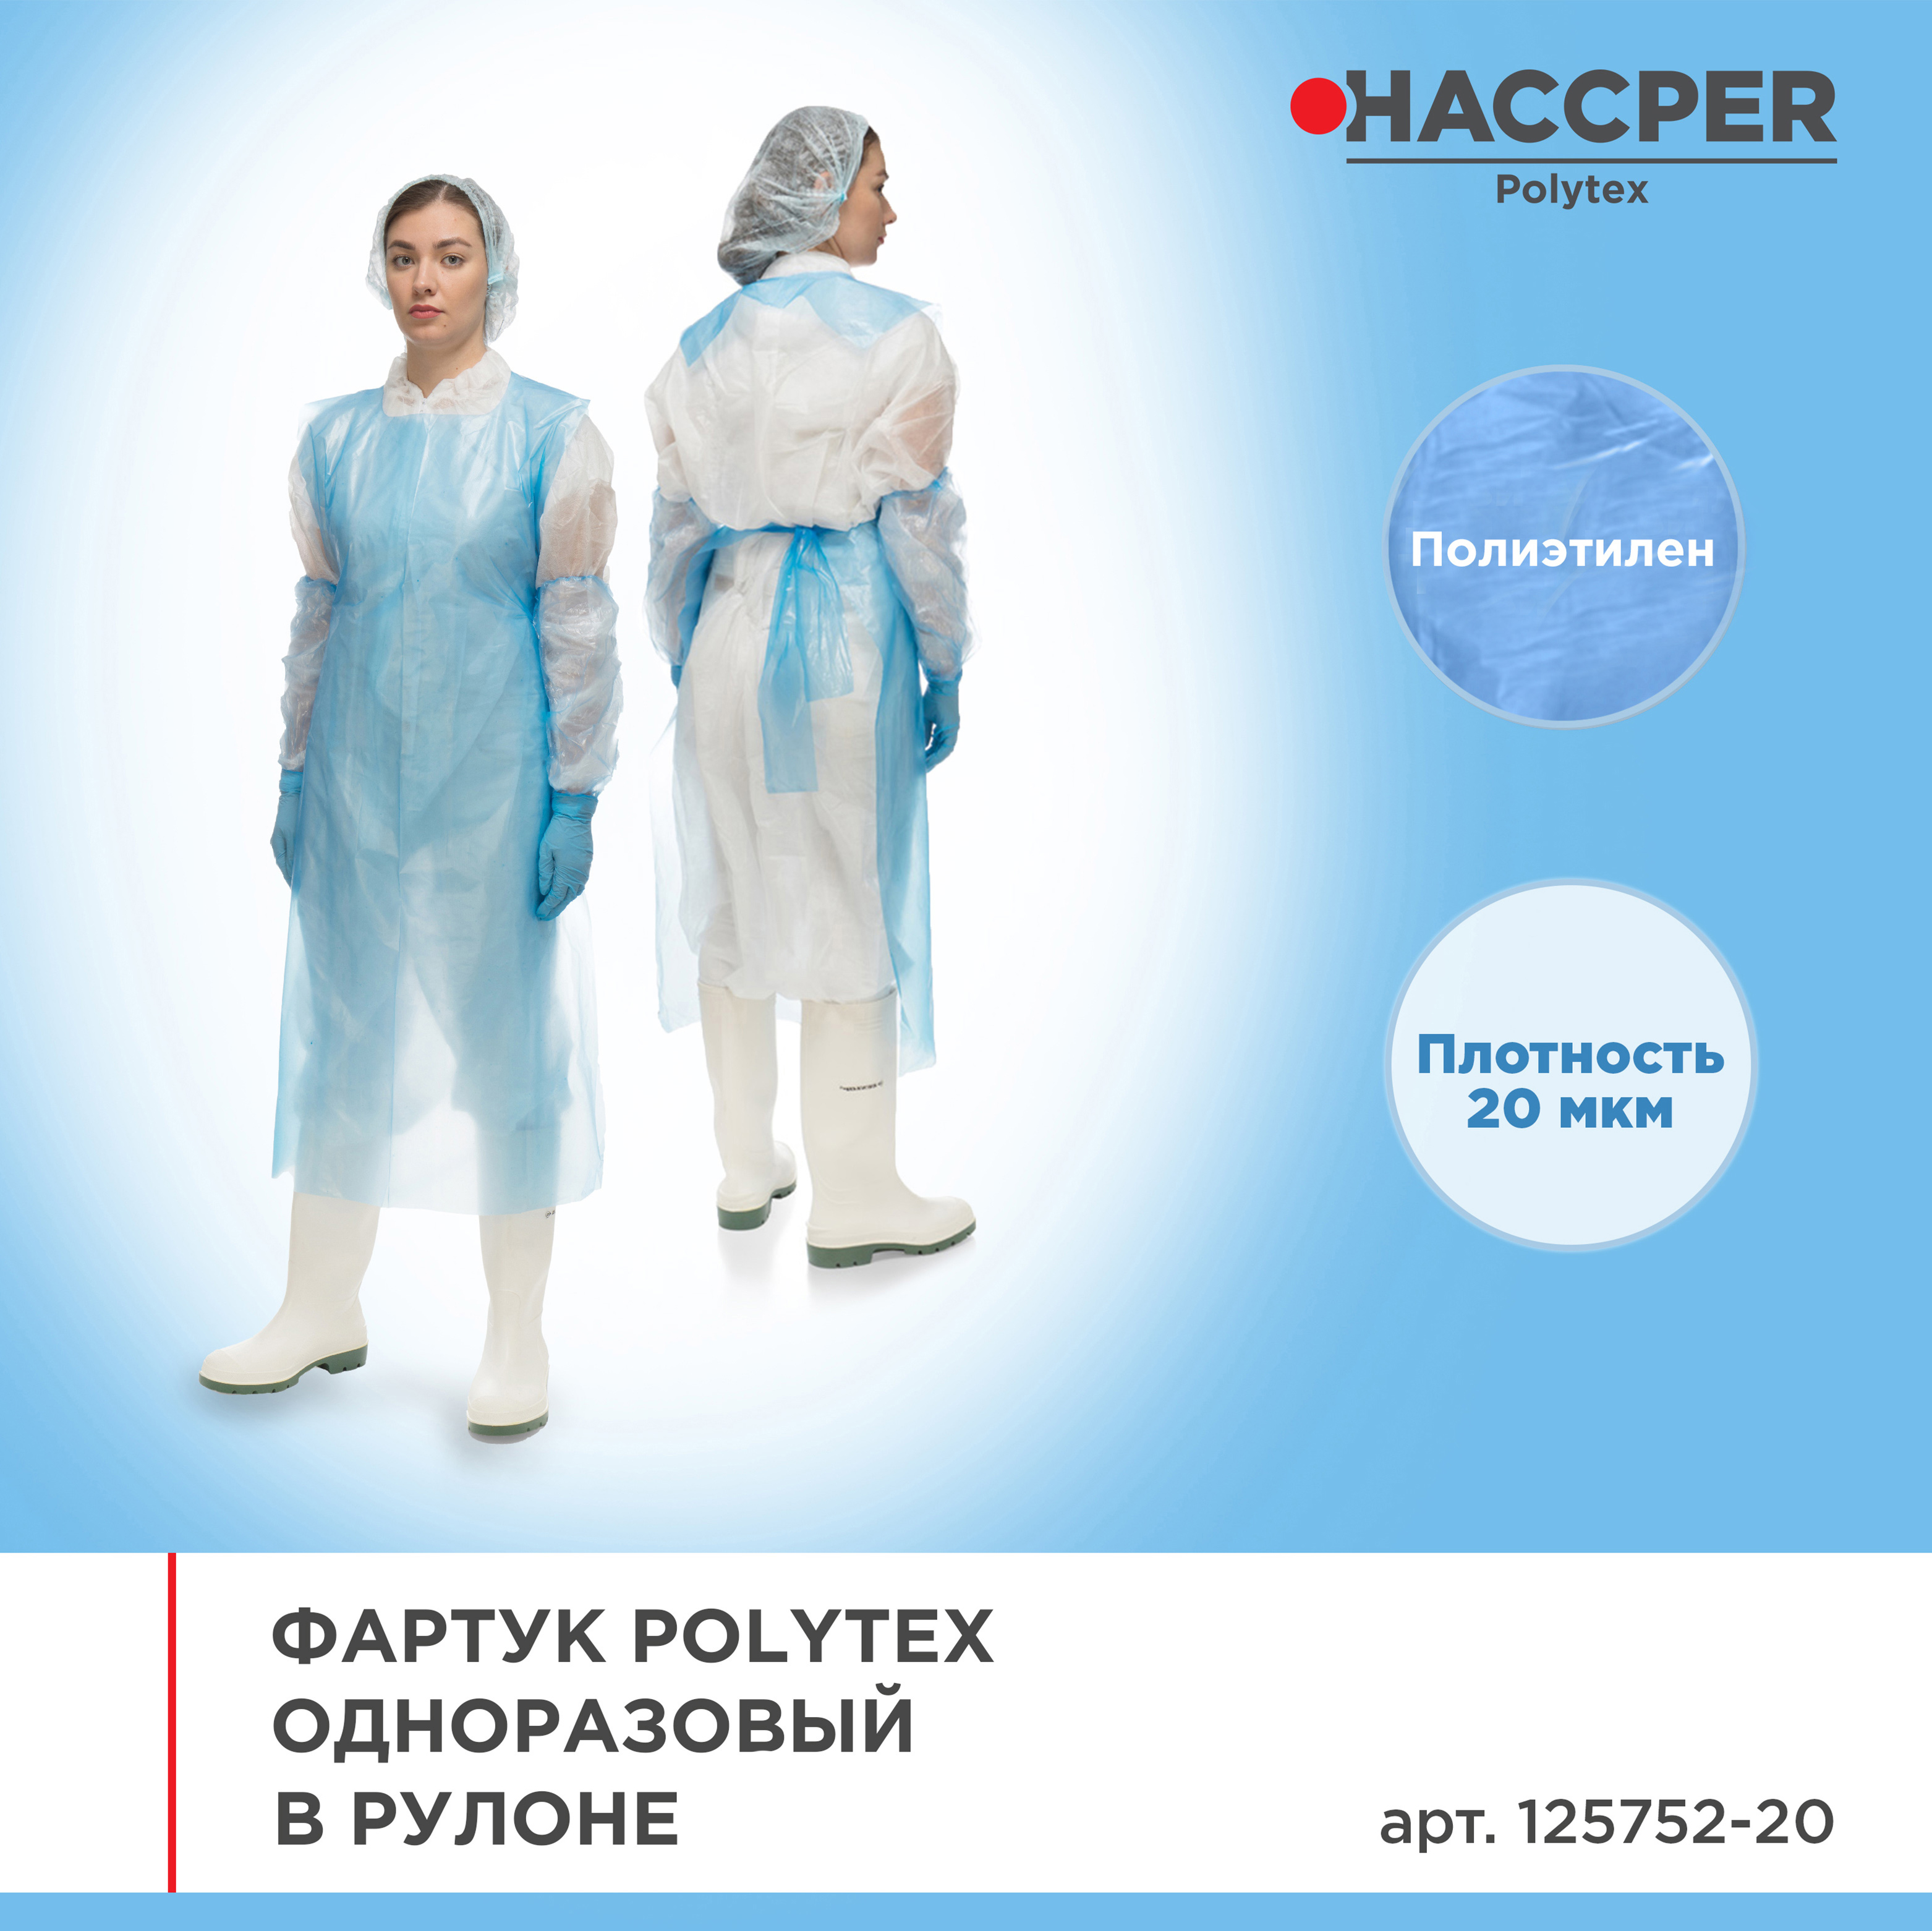 Фартук HACCPER  Polytex одноразовый в рулоне 1250x750 мм, 20 мкм, голубой